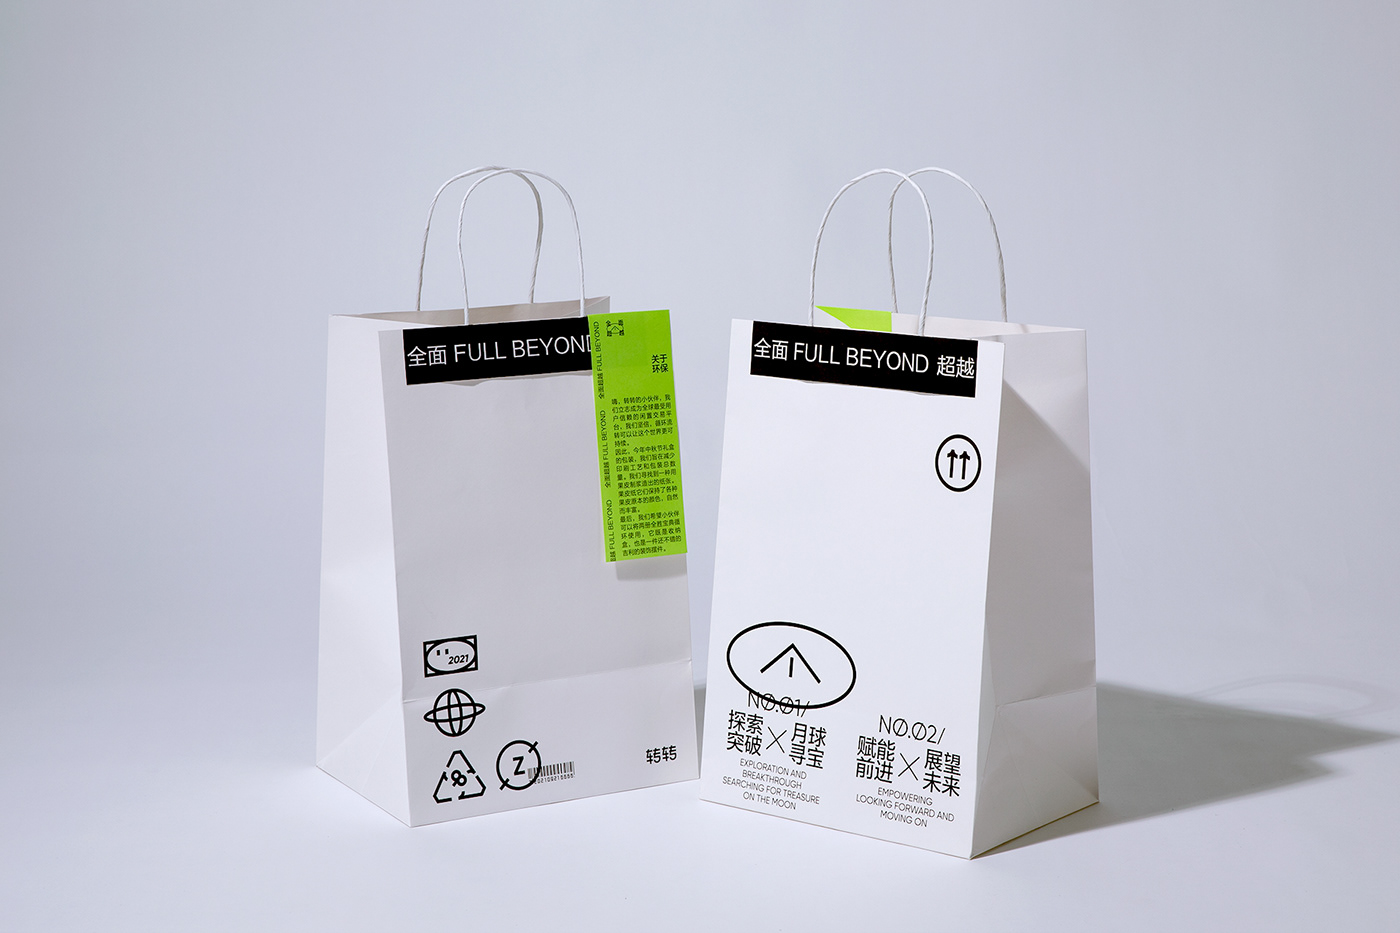 Brand Design gift box design Packaging 中秋节 包装设计 packaging design 品牌设计 月饼 礼盒设计 礼盒设计、包装设计、创意、平面